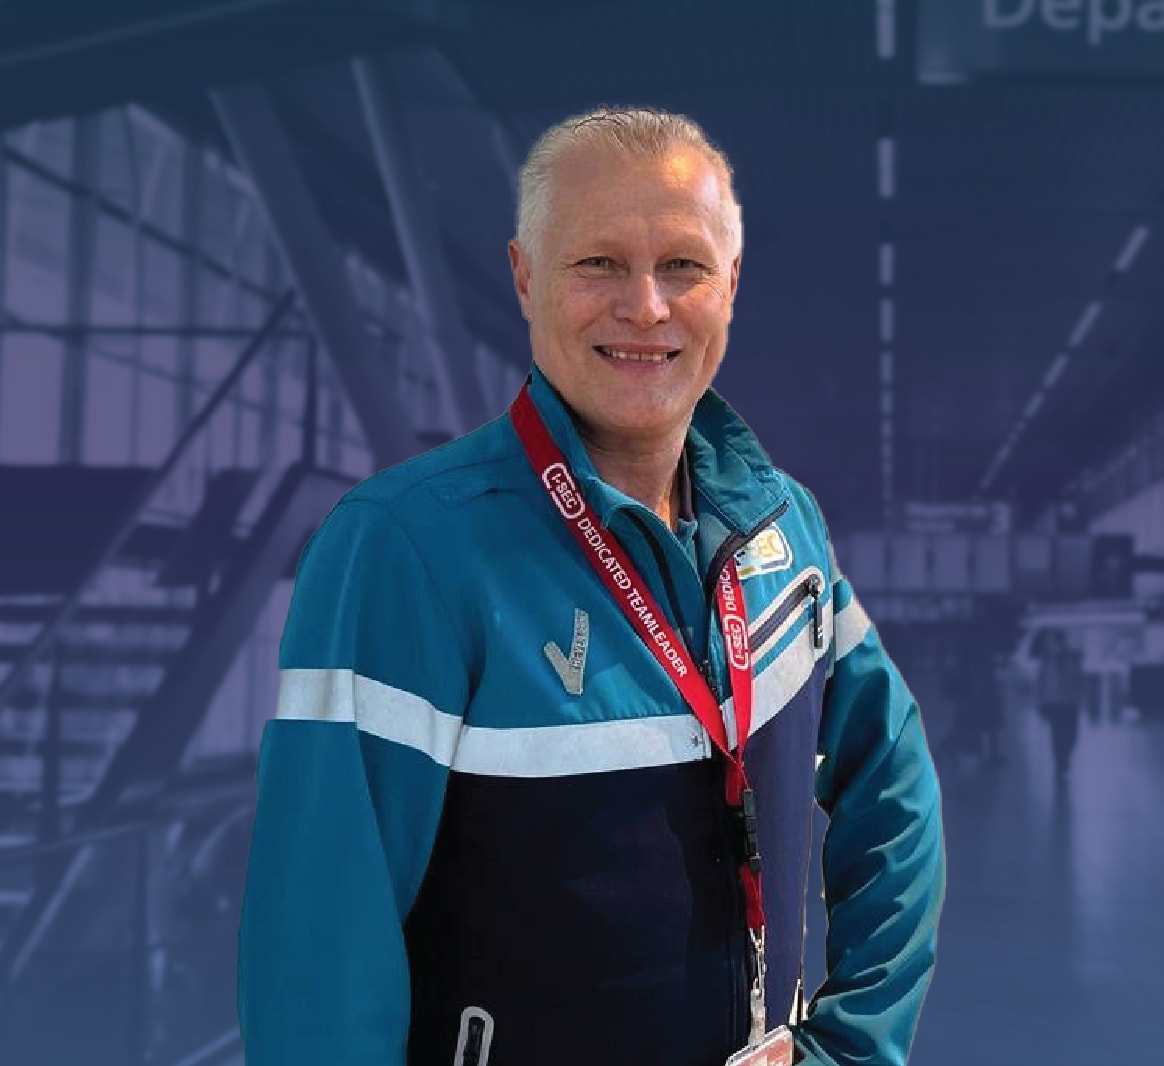 Portret van Danny, een toegewijde teamleider, met een citaat over zijn enthousiasme voor het werk op Schiphol.